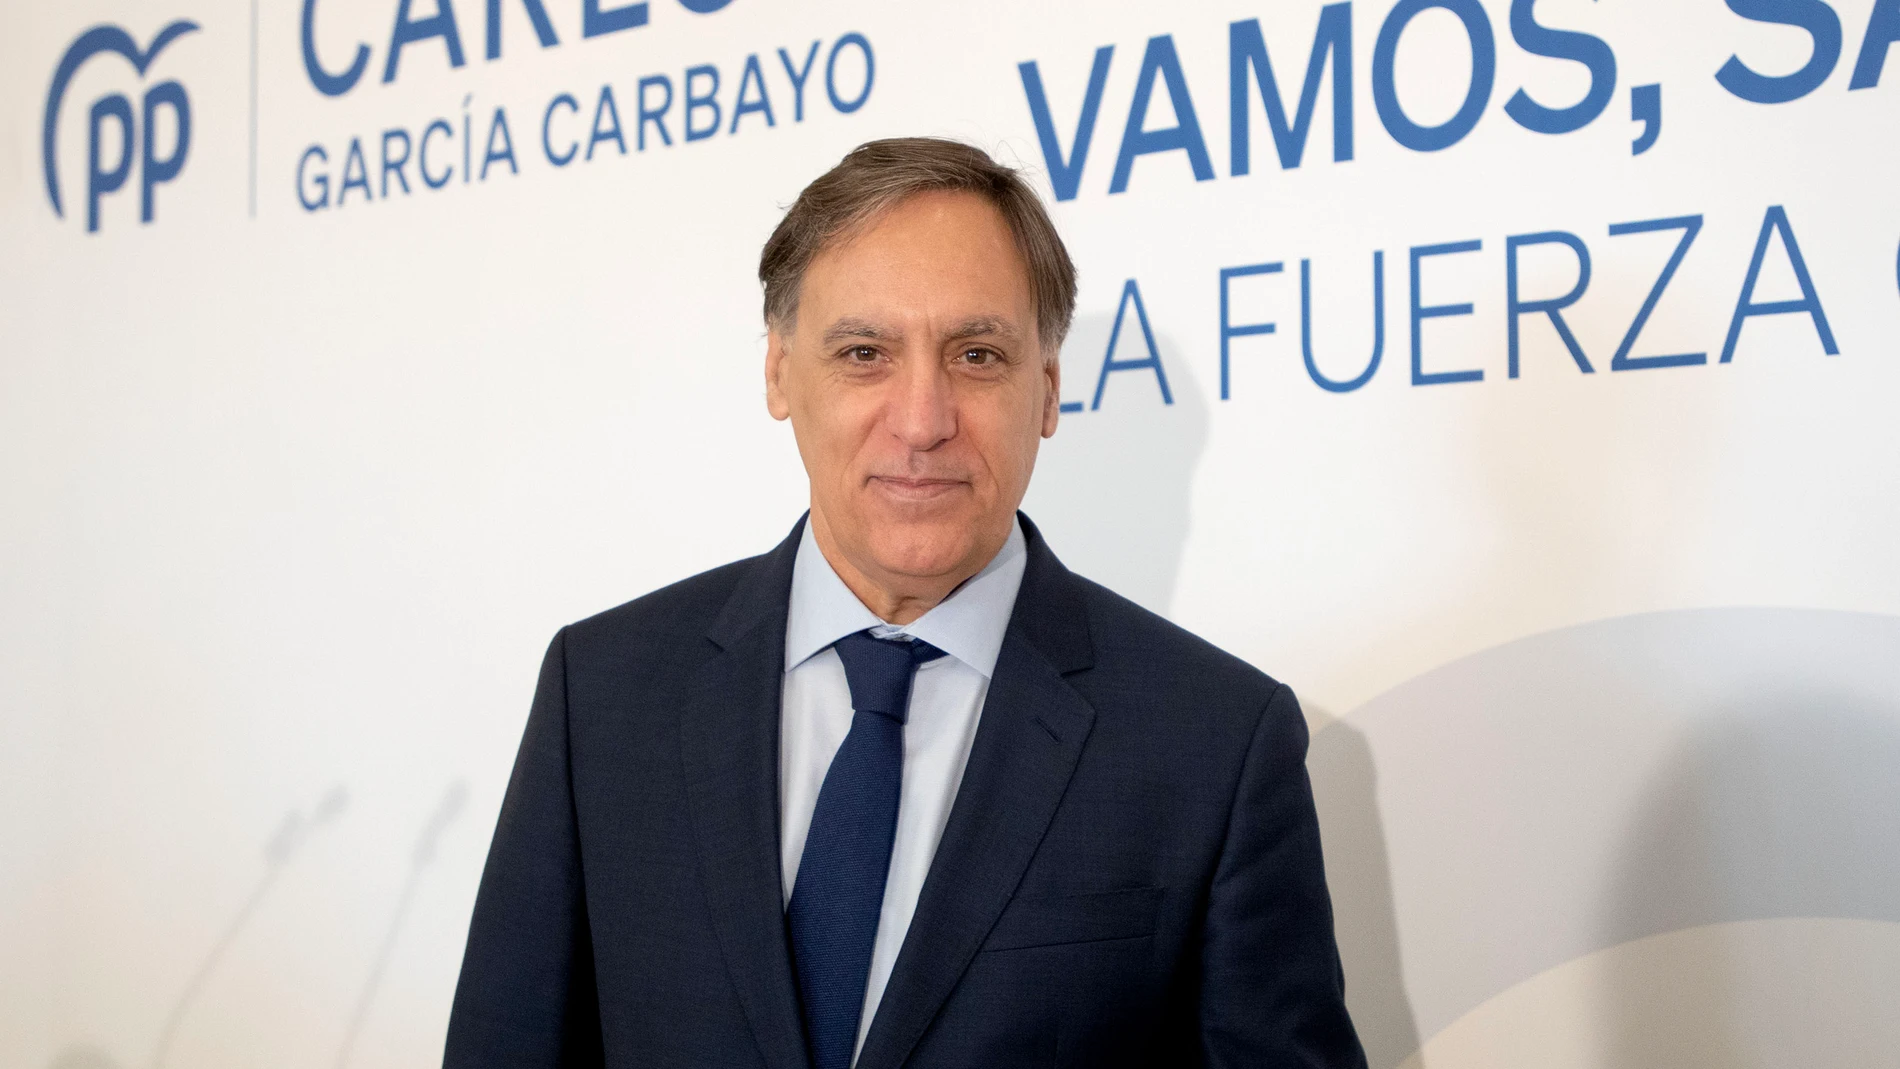 Carlos García Carbayo gana las elecciones primarias del PP de Salamanca